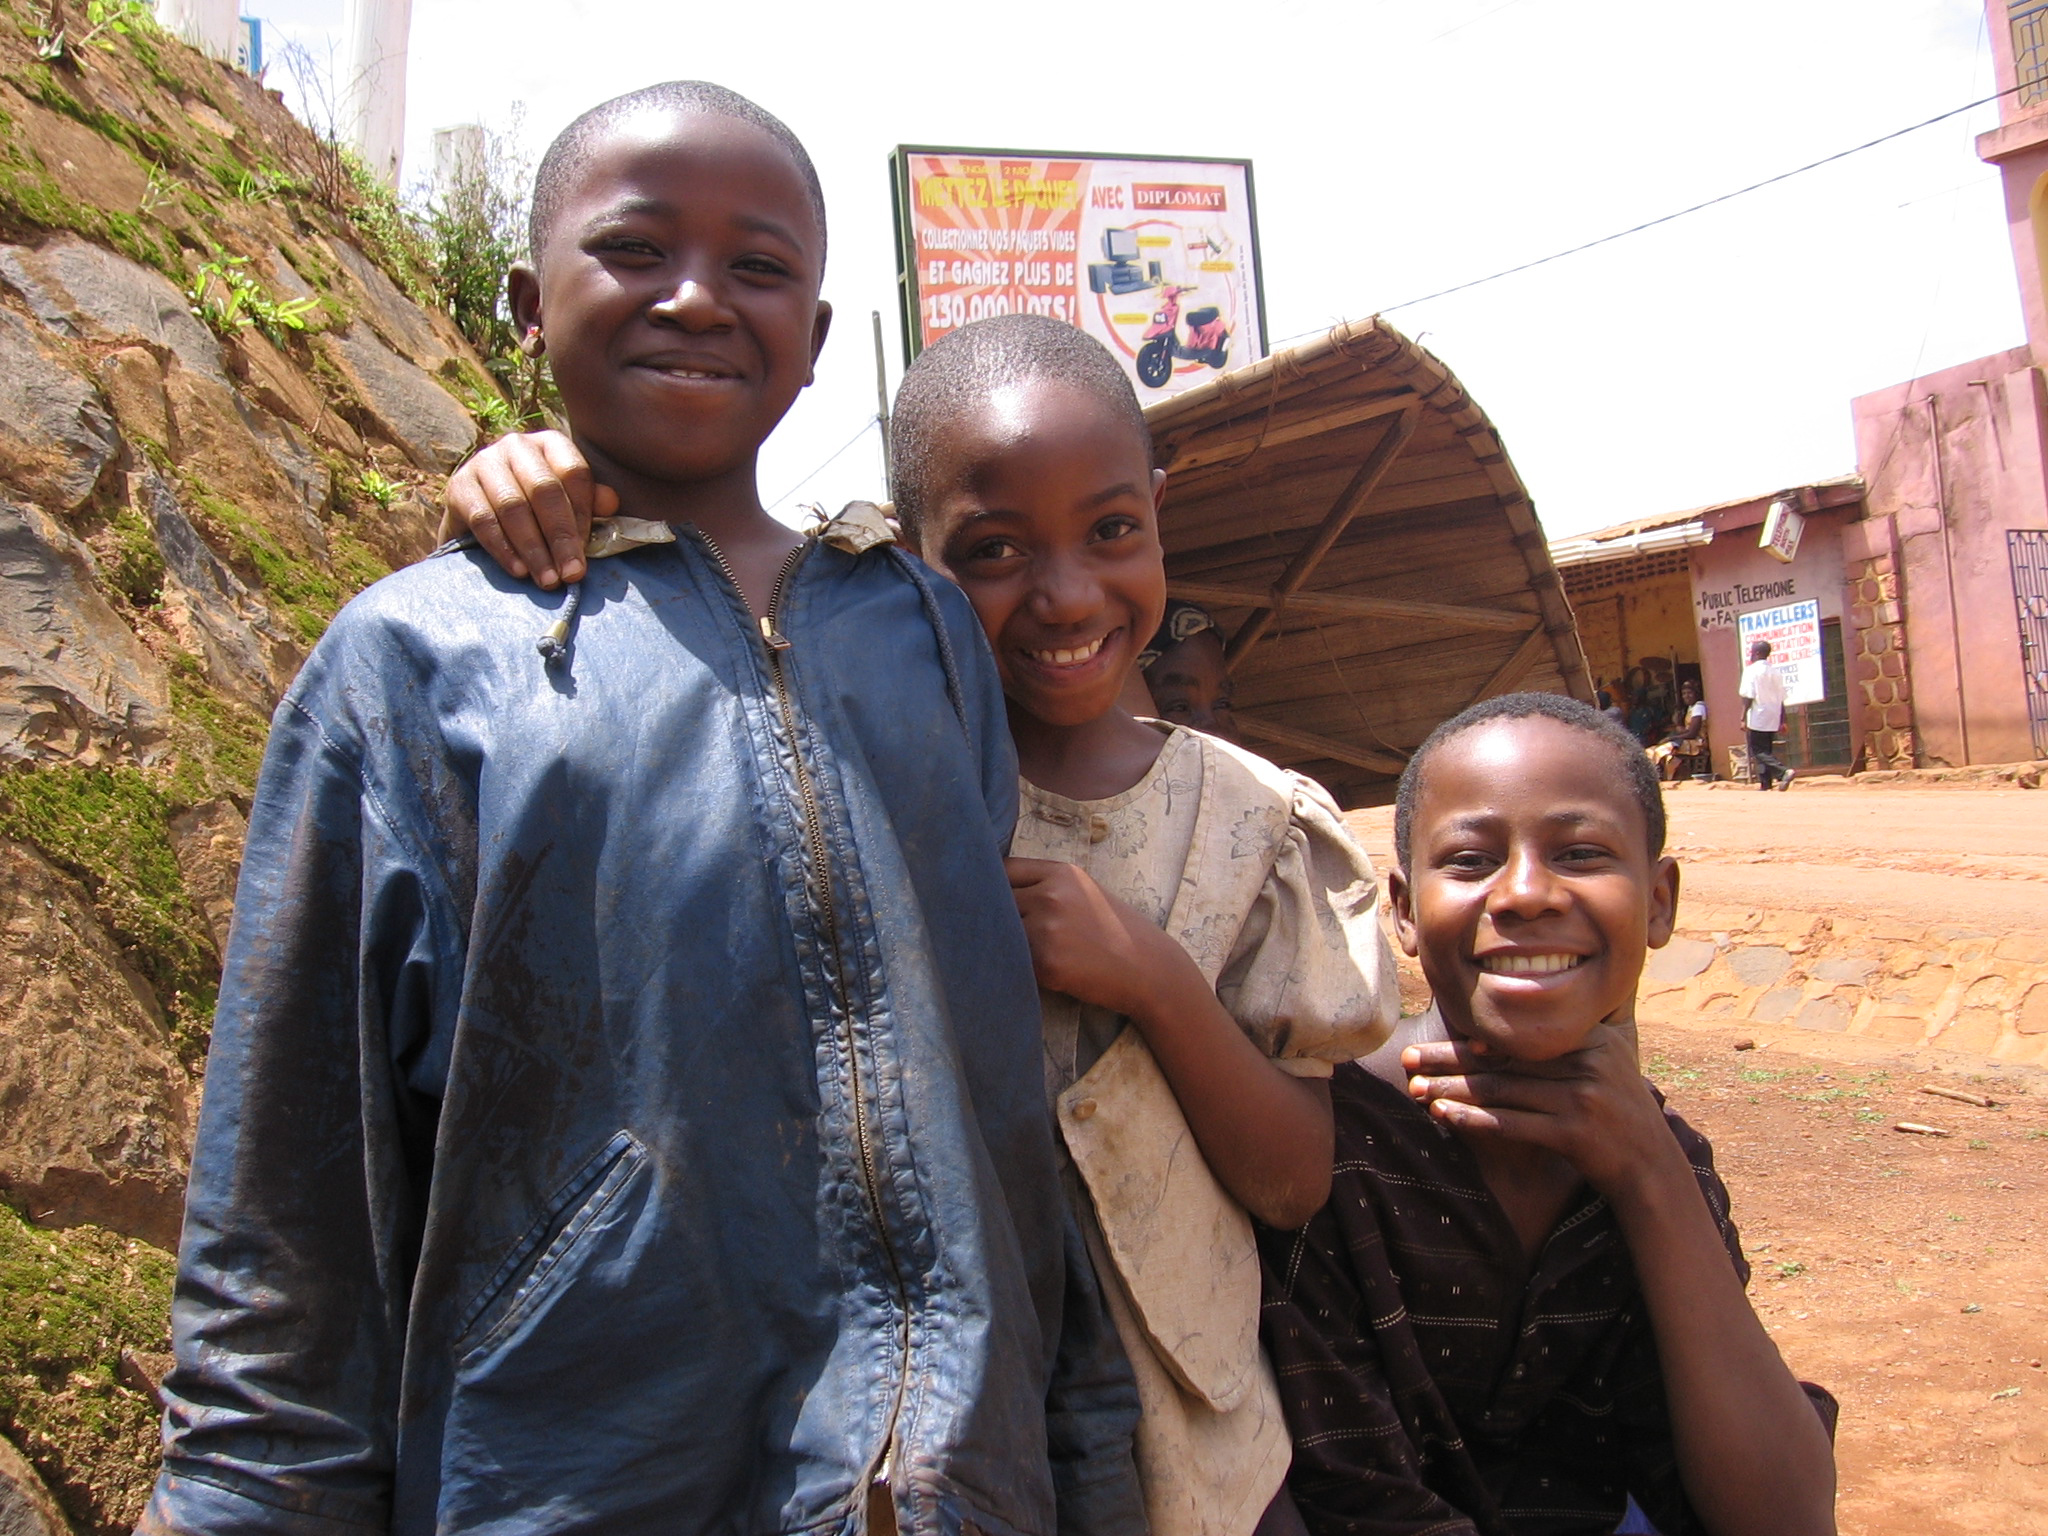 Children in Cameroon. PATH/Claire Suni